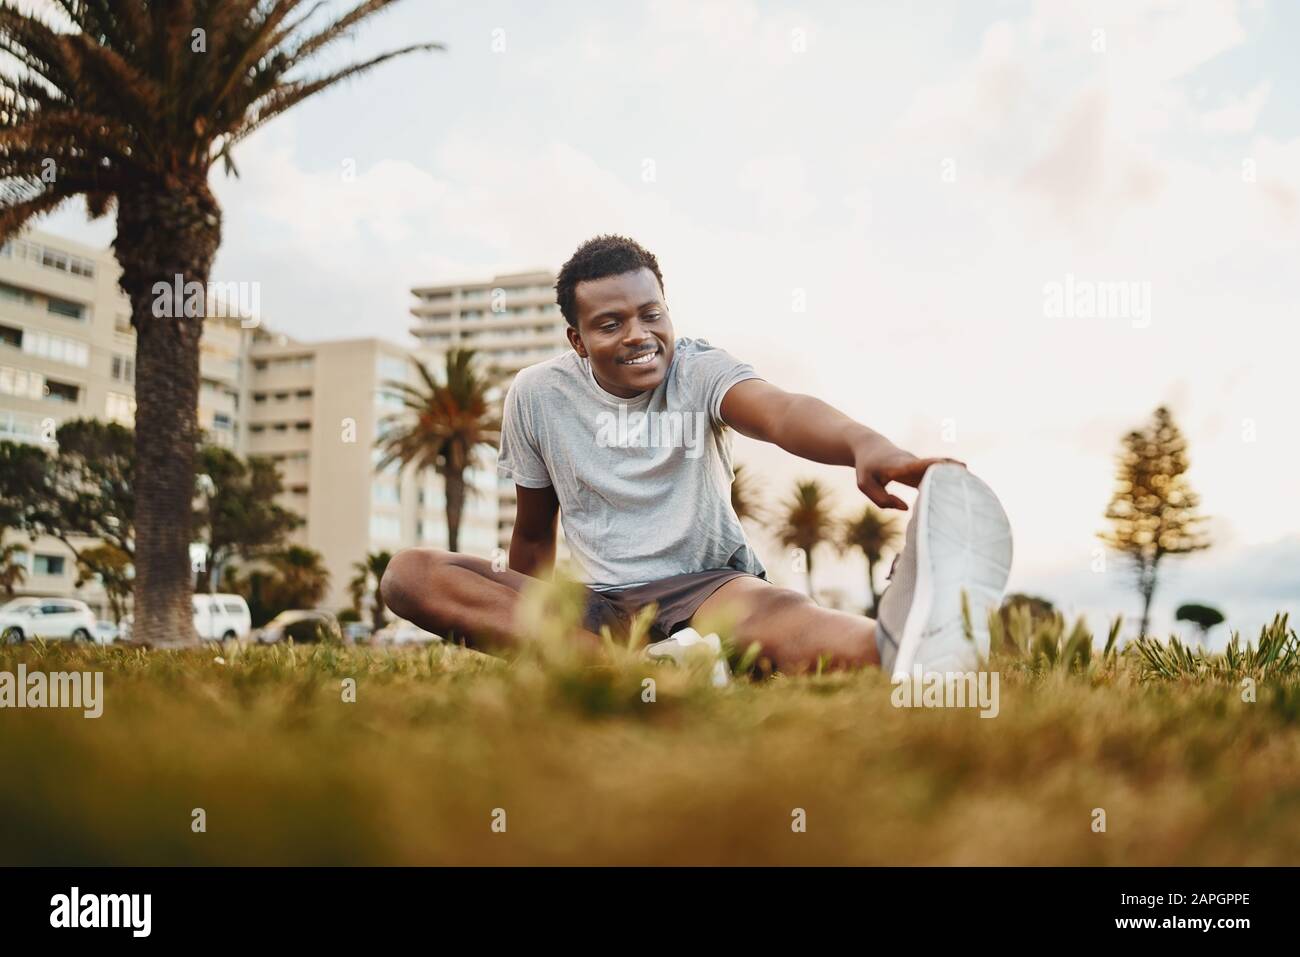 Portrait souriant d'un athlète jeune homme assis sur l'herbe verte faisant de l'exercice étirant au parc Banque D'Images